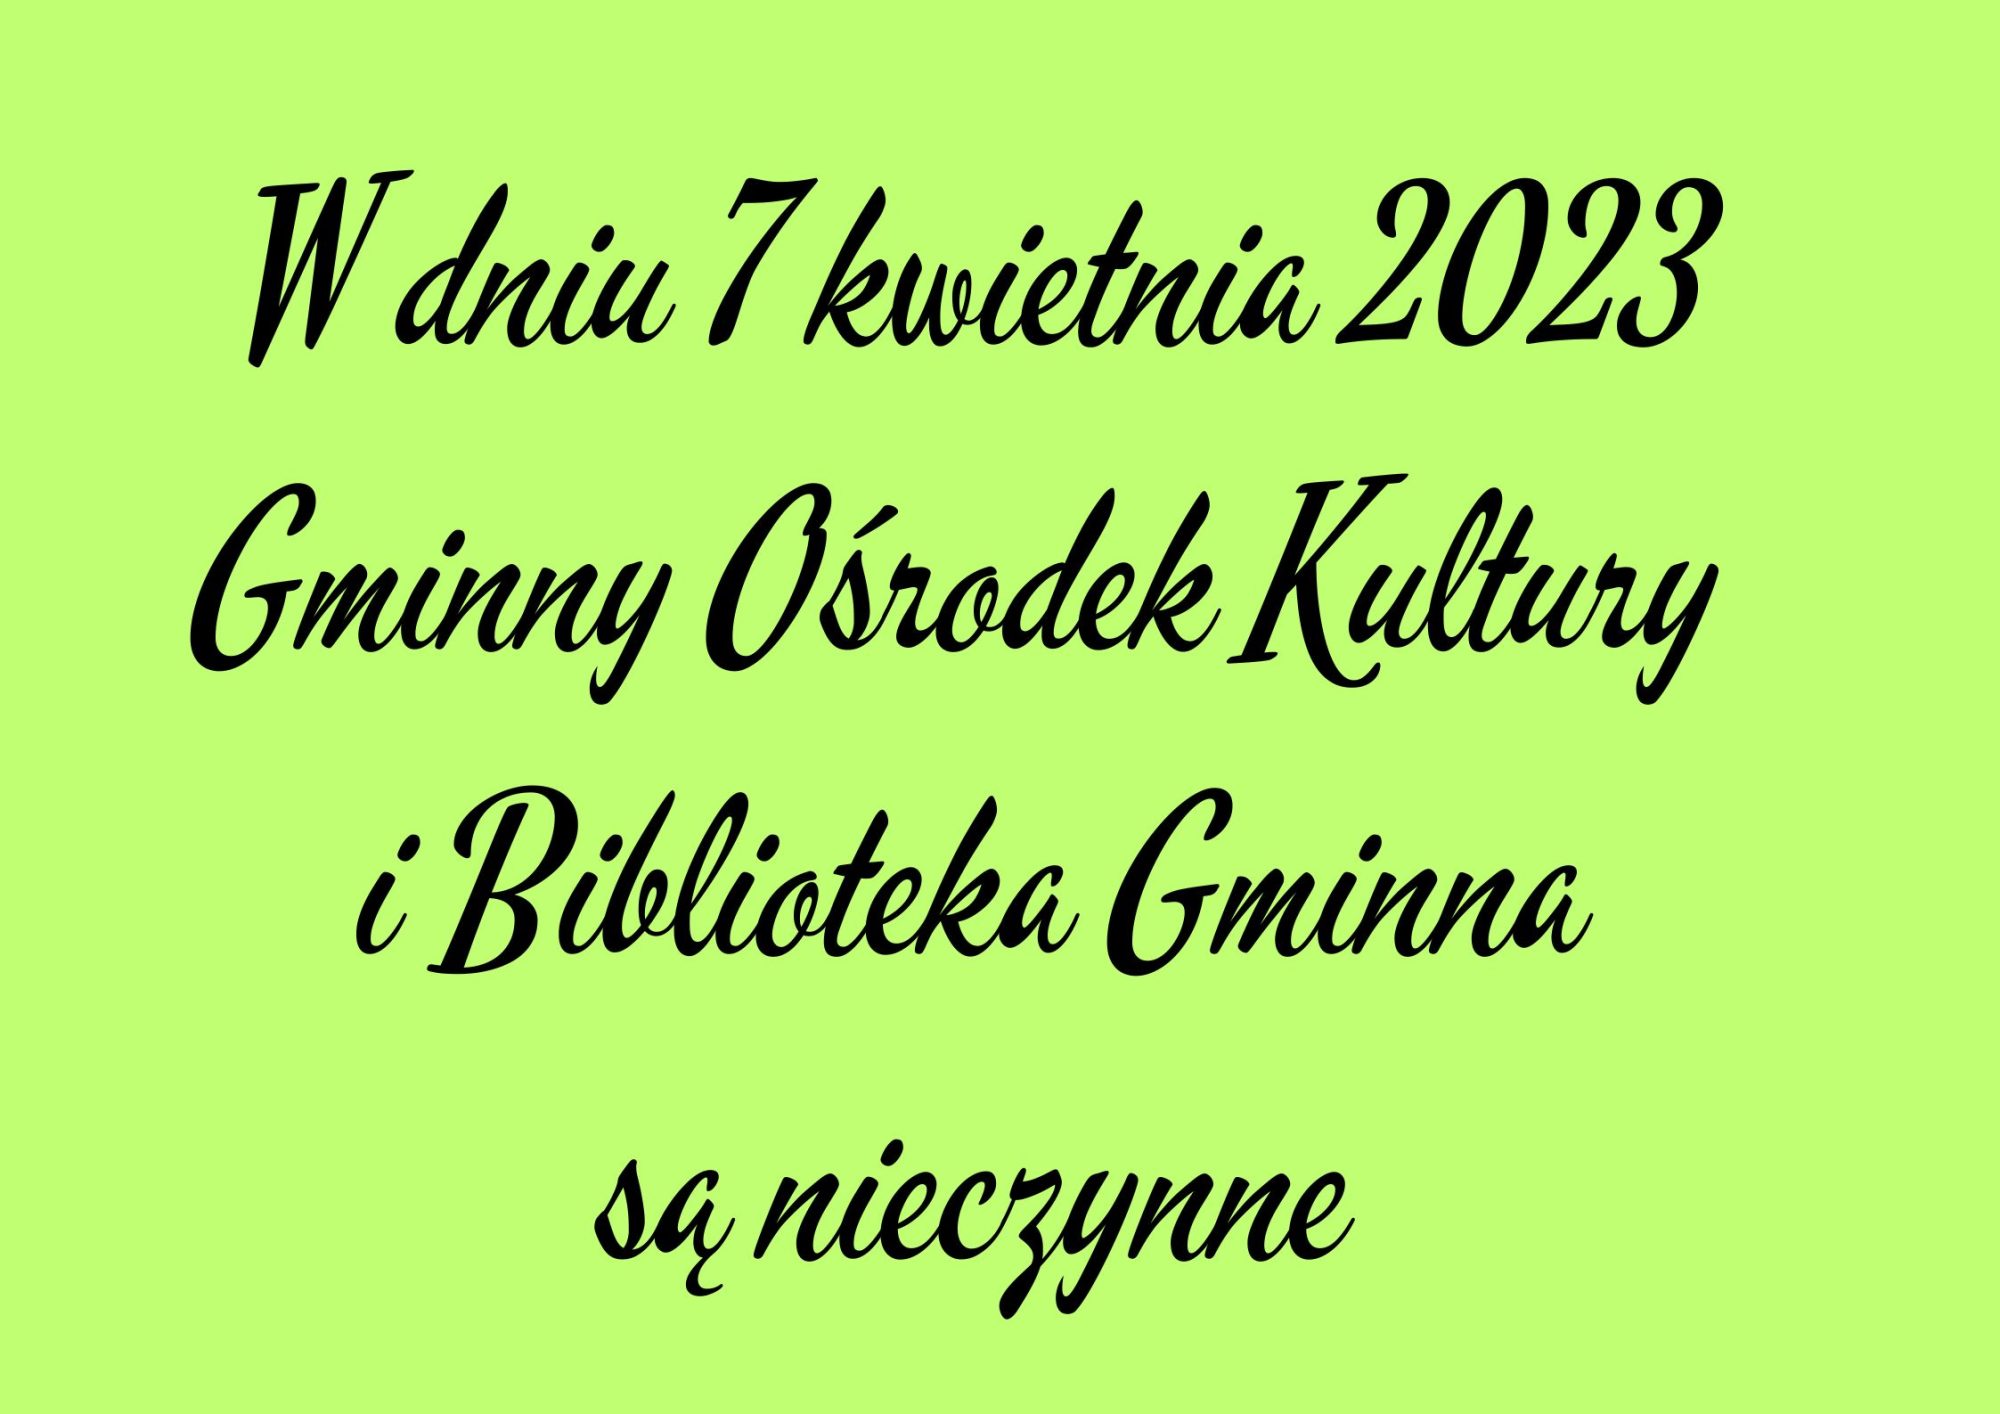 w dniu 7 kwietnia 2023 Gminny Ośrodek Kultury w Goleszowie i Biblioteka Publiczna są nieczynne